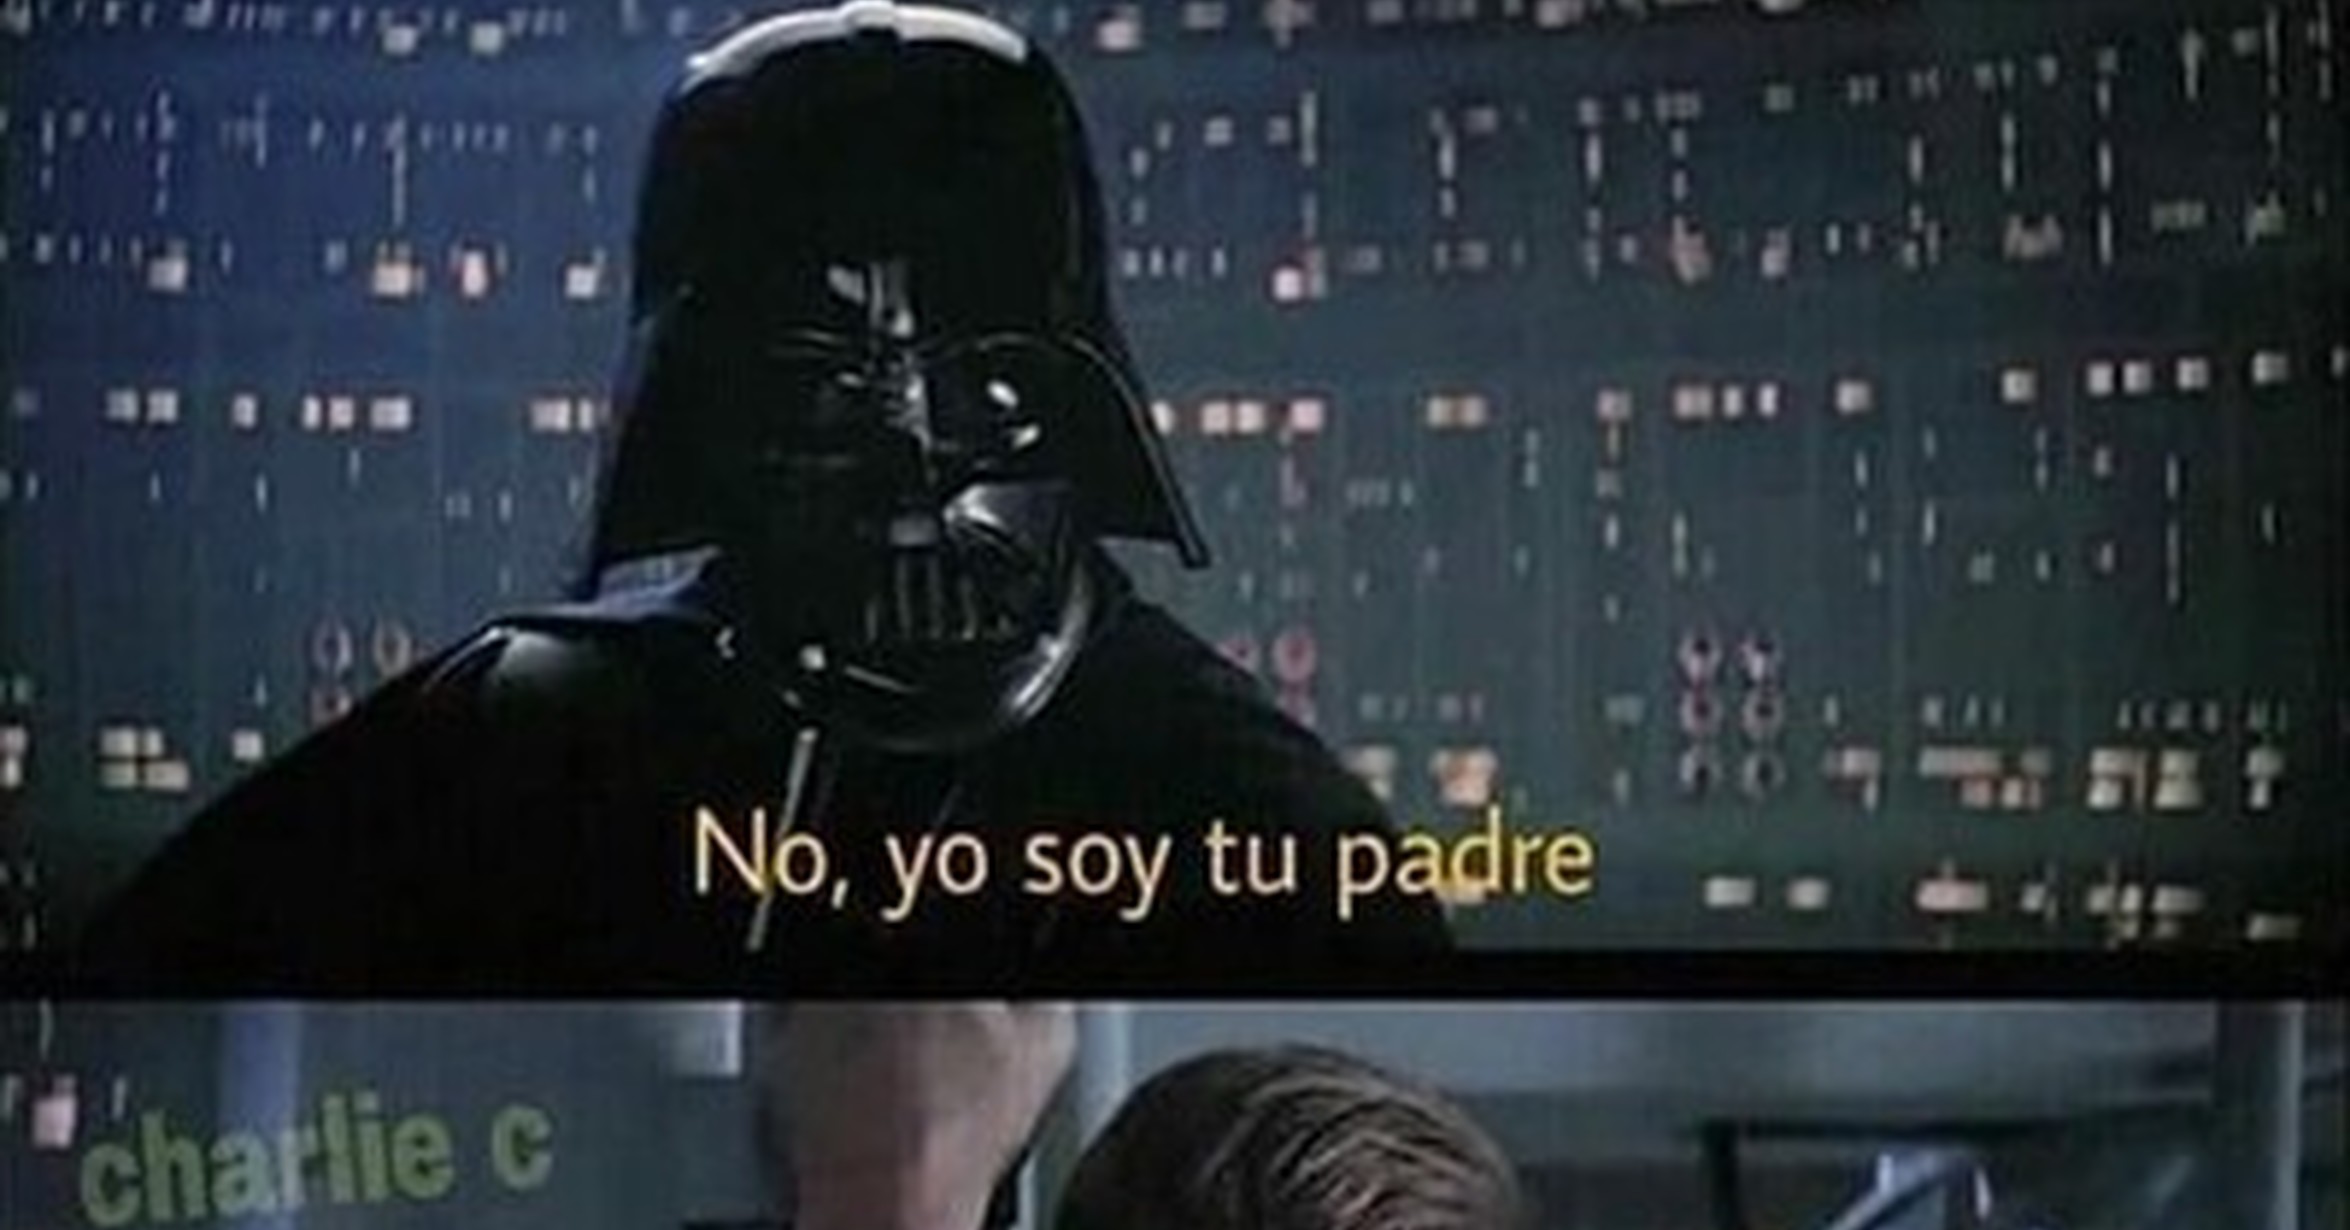 Yo soy tu padre